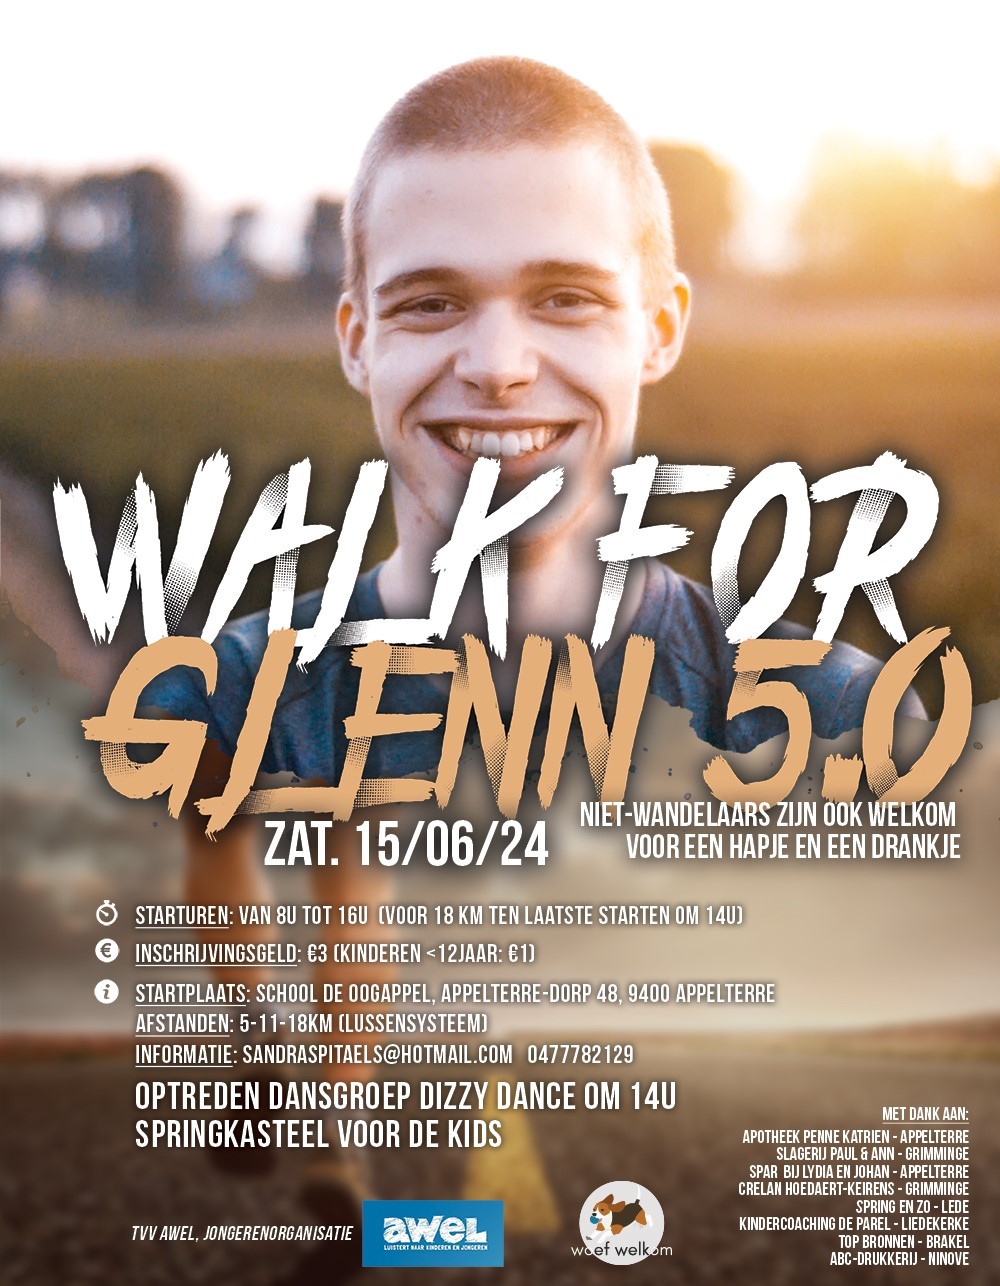 Walk for Glenn 5.0